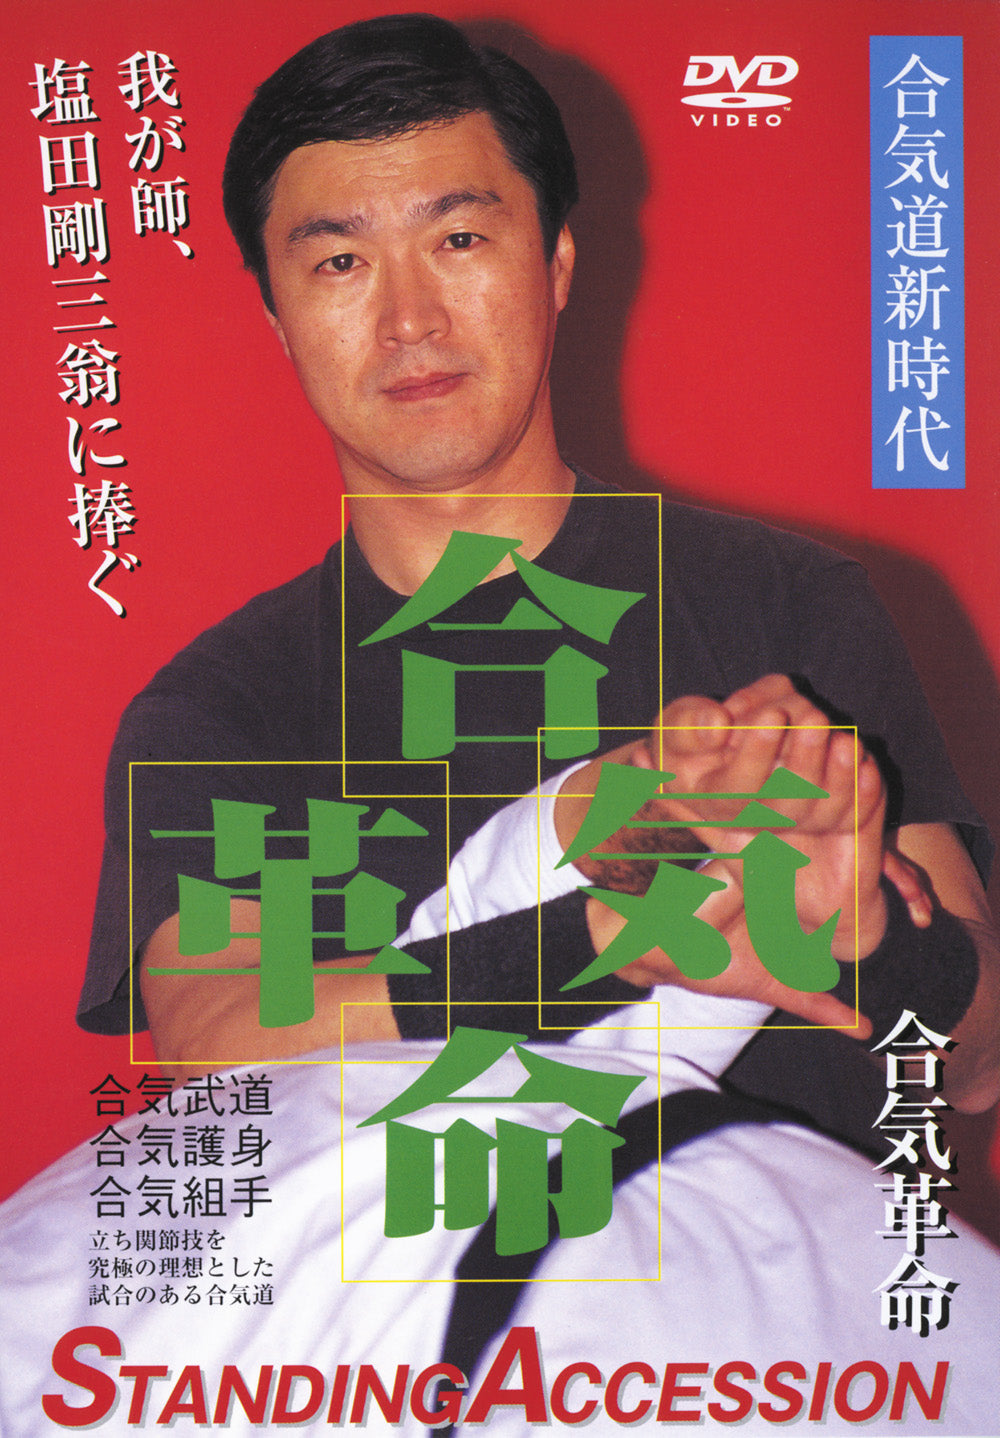 Shoot Aikido: Técnicas reales DVD 1 de Fumio Sakurai